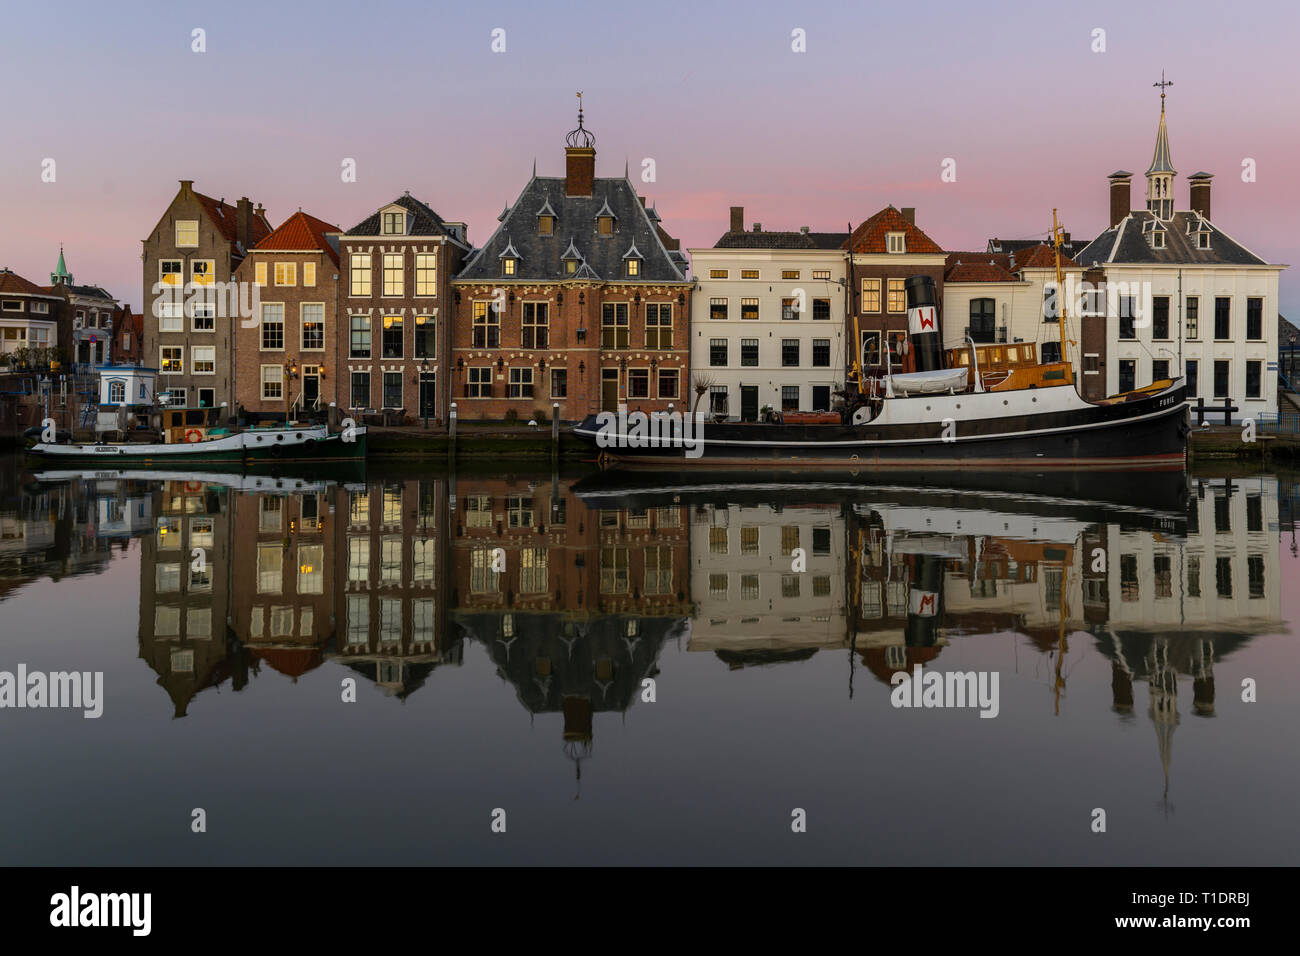 Maassluis, Niederlande - 26. Februar 2019: Der Hafen von Maassluis mit alten Boote, Schlepper und monumentale Häuser auf einem eveniung mit Sonnenuntergang. Stockfoto